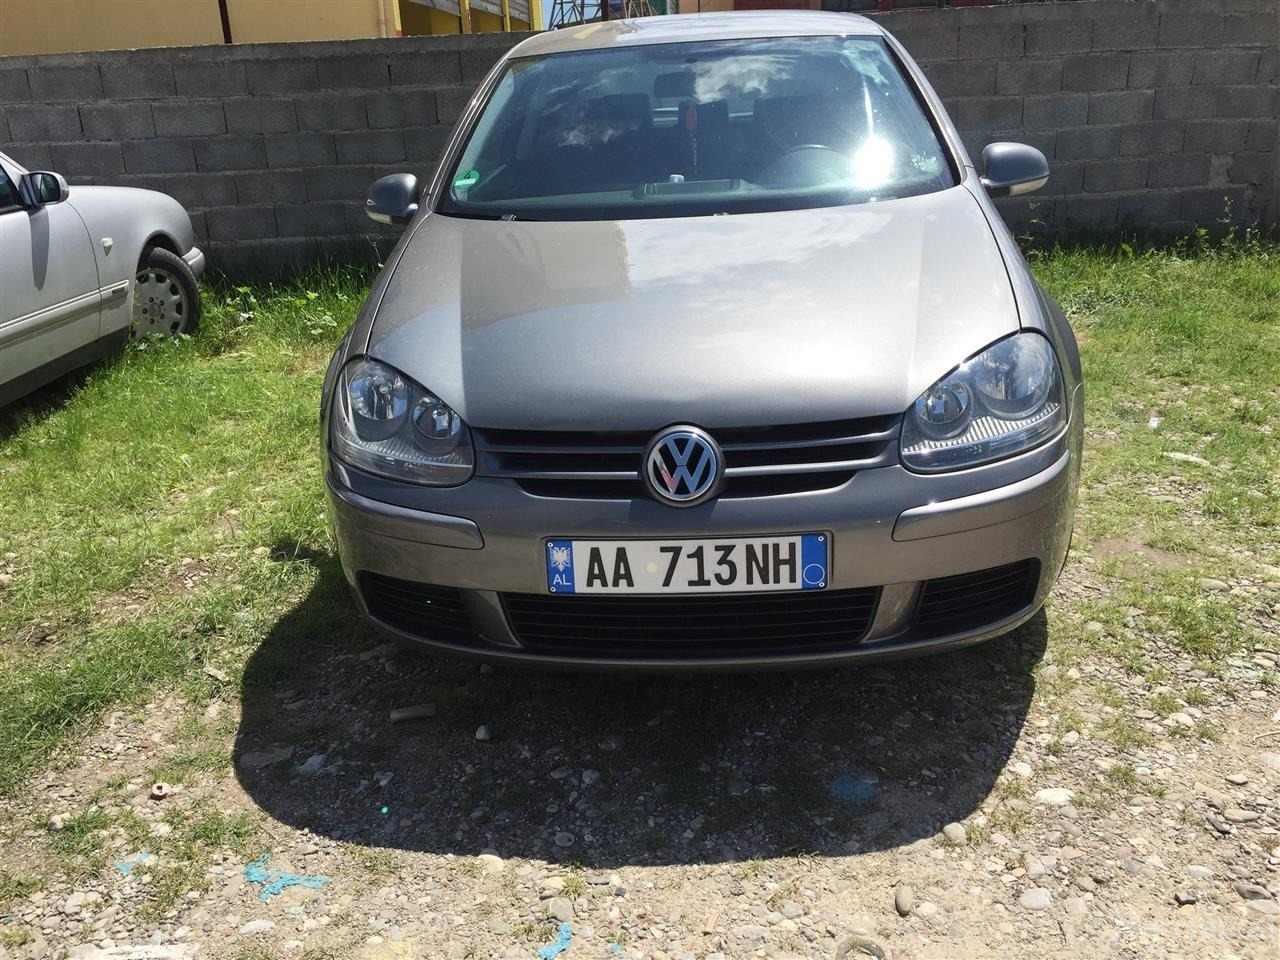 Okazion VW Golf 5 sdi me dokumenta te paguara 05 Tiranë